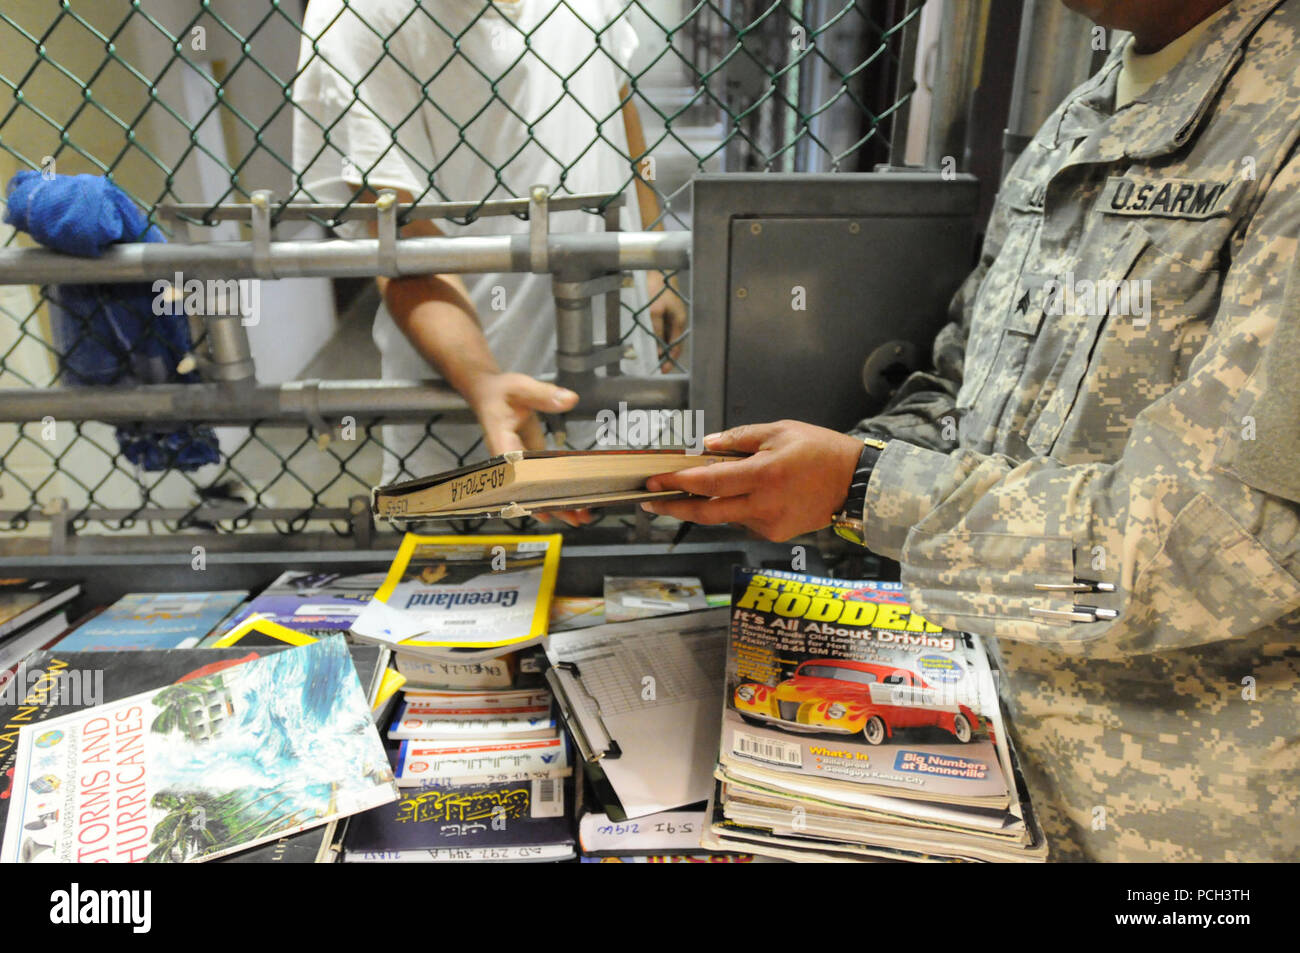 GUANTANAMO Bay a Cuba - un soldato da detenuto library mani un libro a un detenuto a Camp cinque, Feb. 16. JTF Guantanamo fornisce un sicuro, umano, legale e trasparente di cura e custodia dei detenuti, compresi quelli condannati dalla commissione militare e quelli ordinati rilasciato da un tribunale. La JTF conduce la raccolta di intelligence, analisi e diffusione per la tutela dei detenuti e il personale che lavora in JTF Guantanamo strutture e a sostegno della guerra al terrore. JTF Guantanamo fornisce il supporto per l'Ufficio di commissioni militari, di applicazione della legge e per i crimini di guerra di indagini Foto Stock